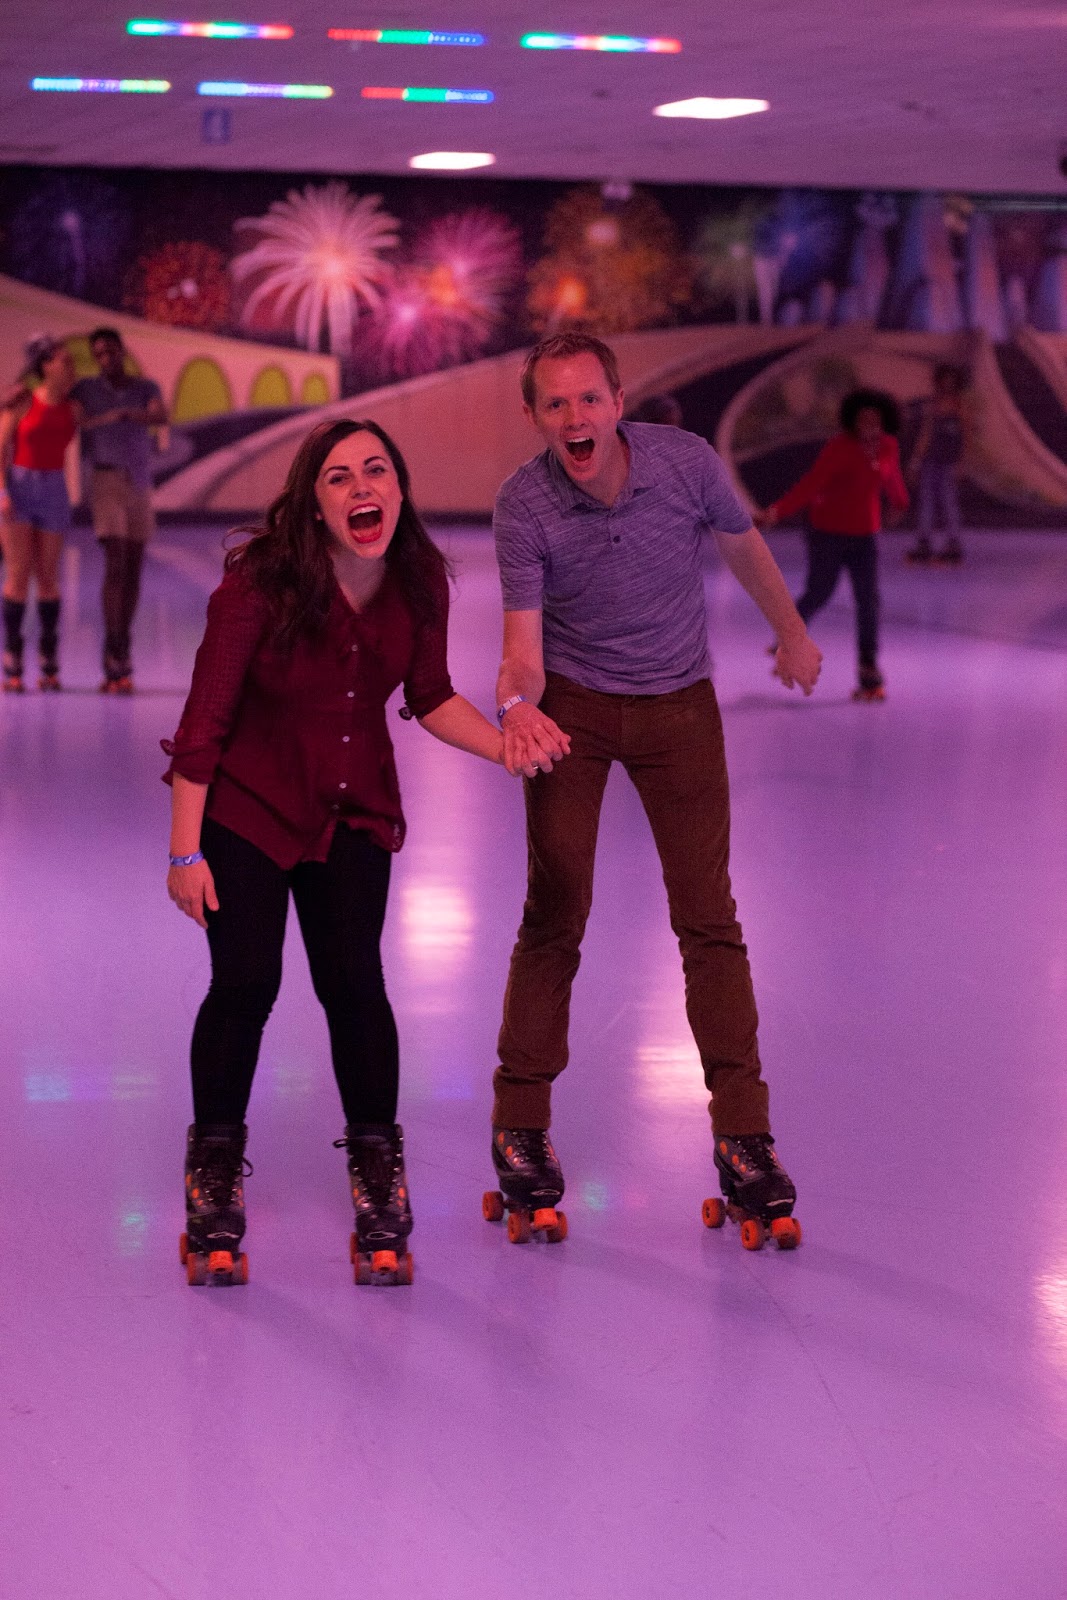 Couples skate roller skating. 